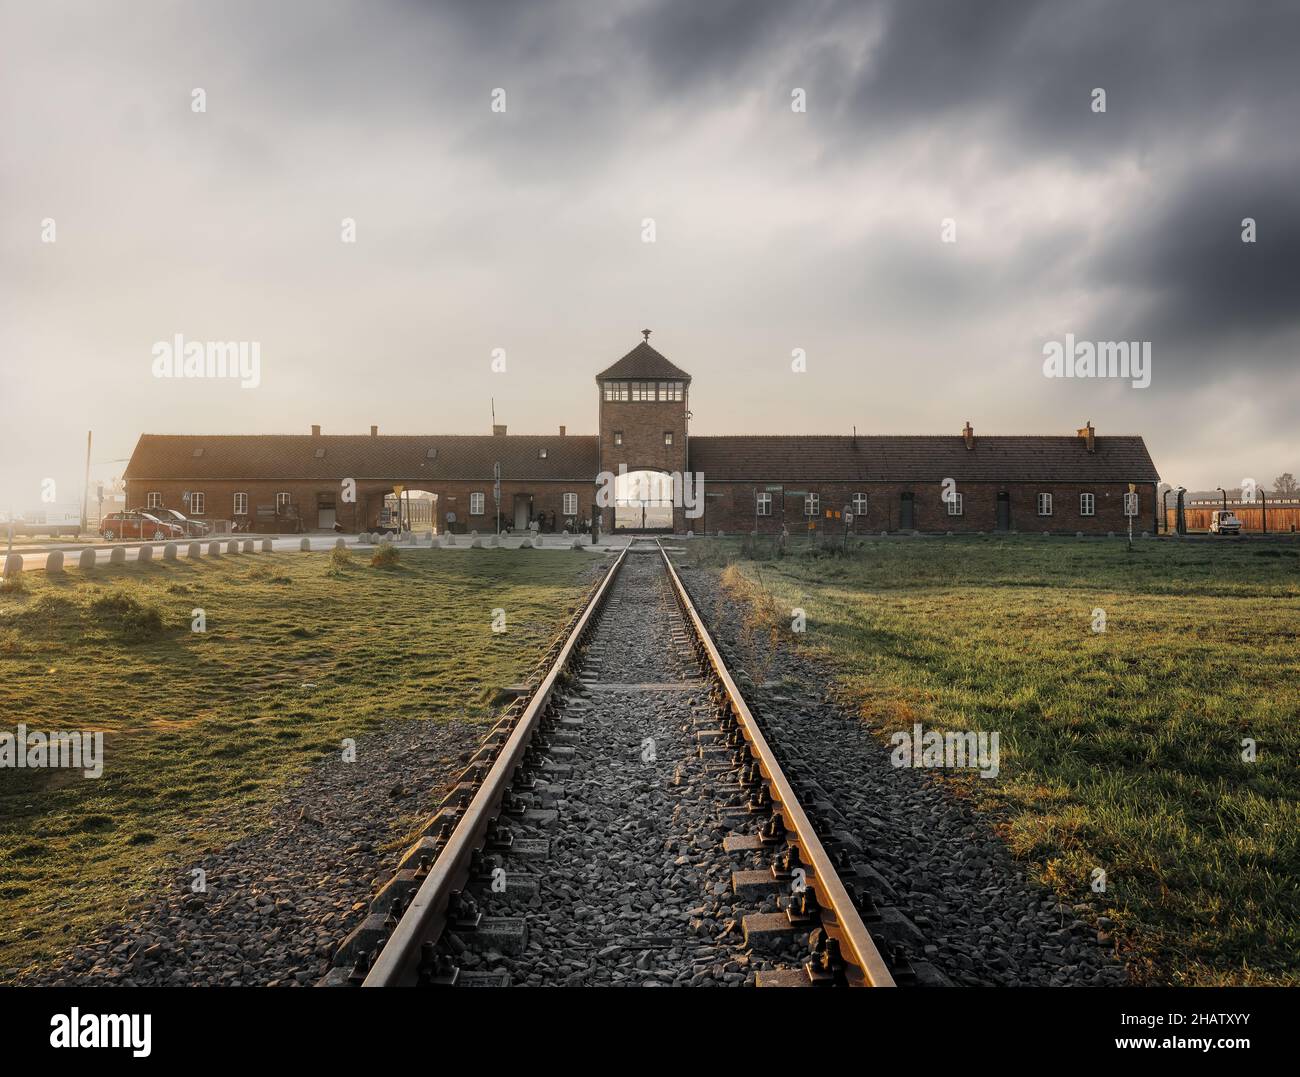 Binario ferroviario e porta della morte - ingresso di Auschwitz II - Birkenau, ex campo di concentramento e sterminio nazista tedesco - Polonia Foto Stock